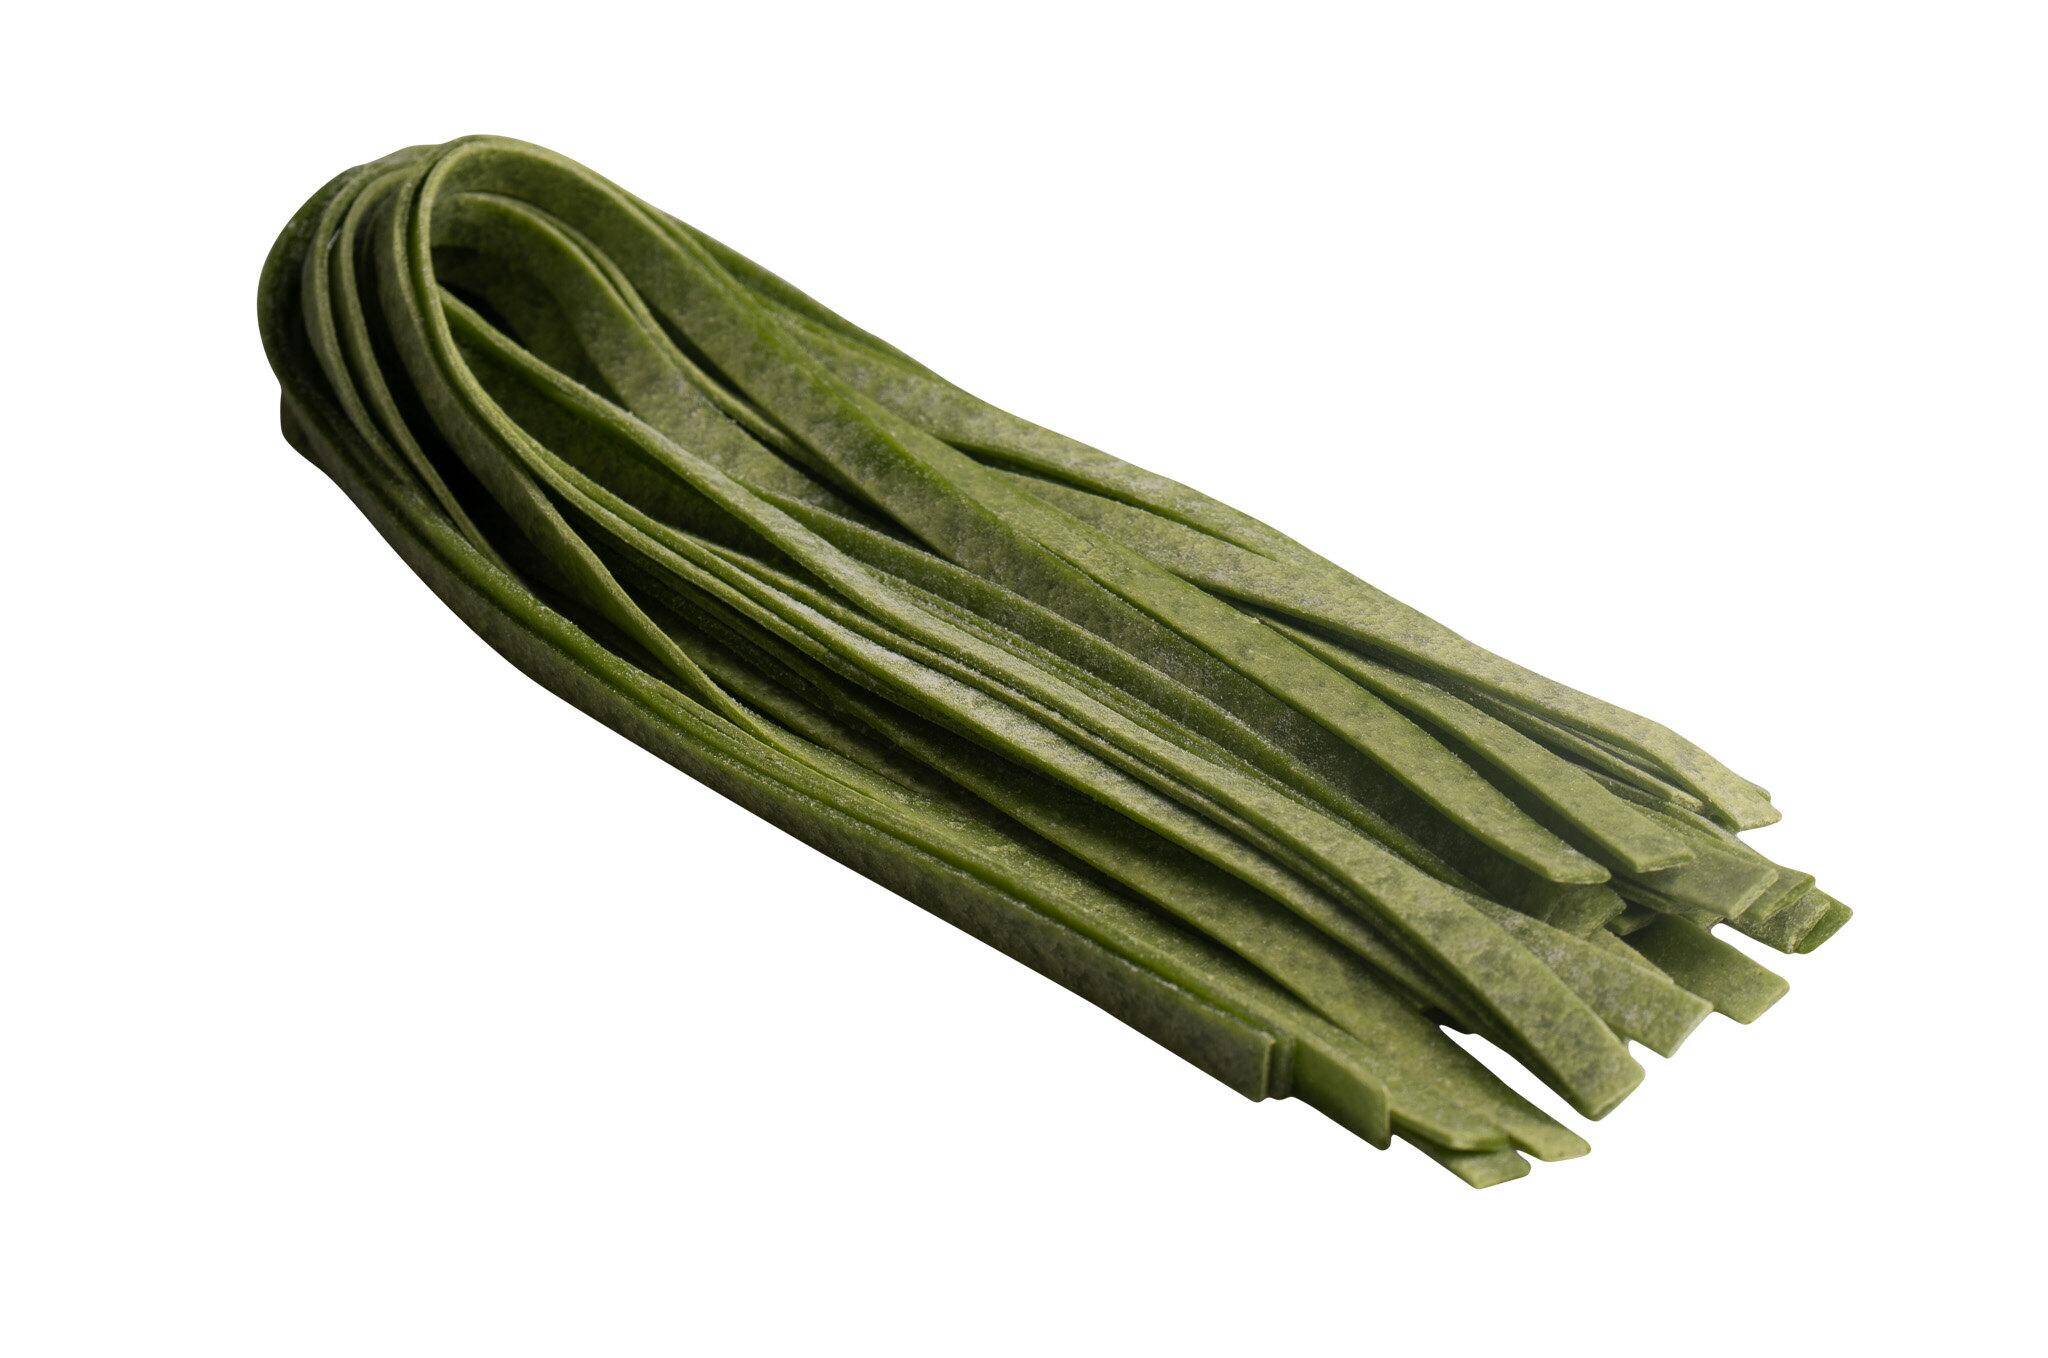 Makaron Tagliatelle szpinakowe (zielone) (6mm,100g/szt) 2kg/krt mroż.Perino